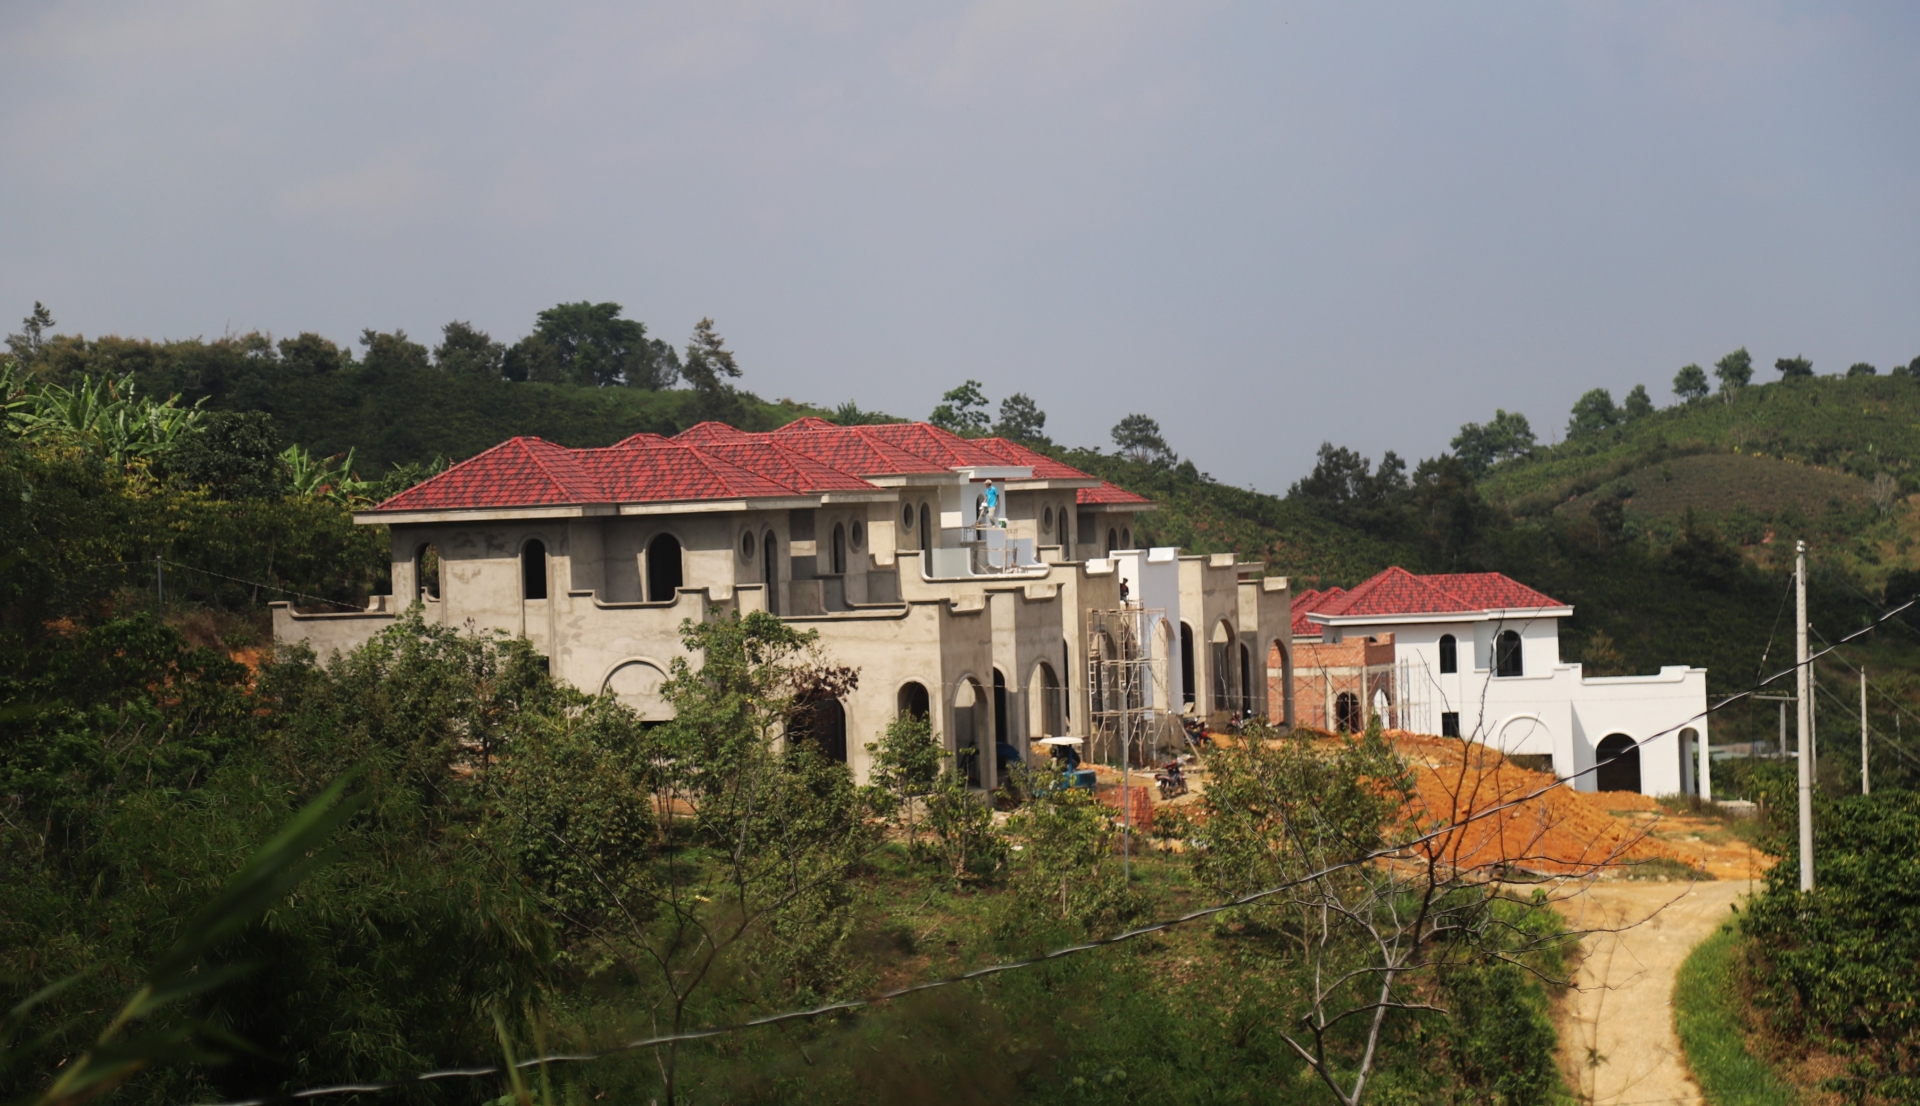 Khu biệt thự đồ sộ với 22 căn nhà xây dựng không phép tại Thôn 10A (xã Lộc Thành, huyện Bảo Lâm)